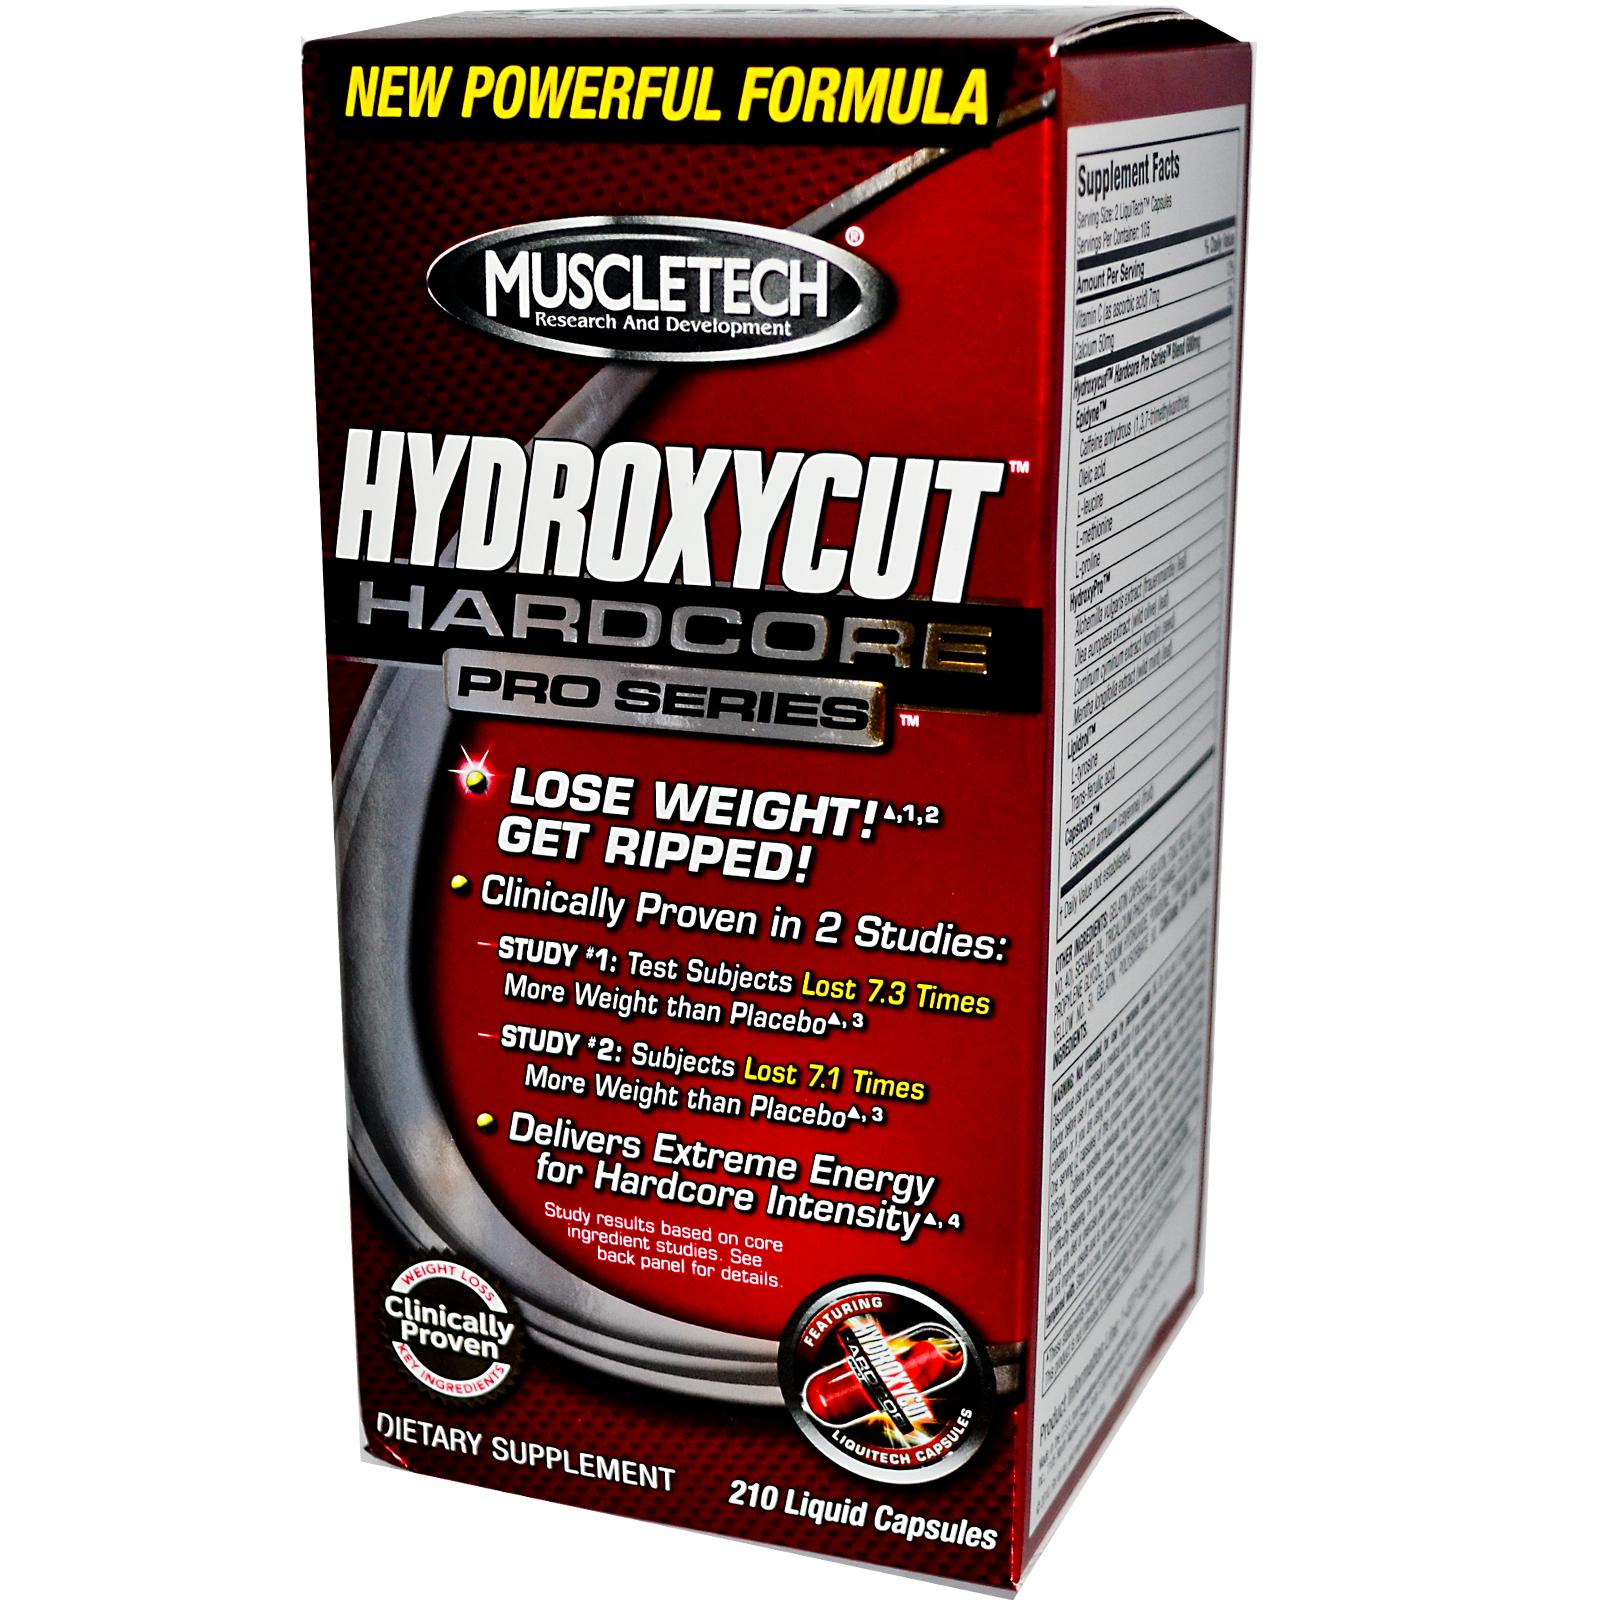 Hydroxycut Hardcore, 120 pcs, MuscleTech. Fat Burner. Weight Loss Fat burning 